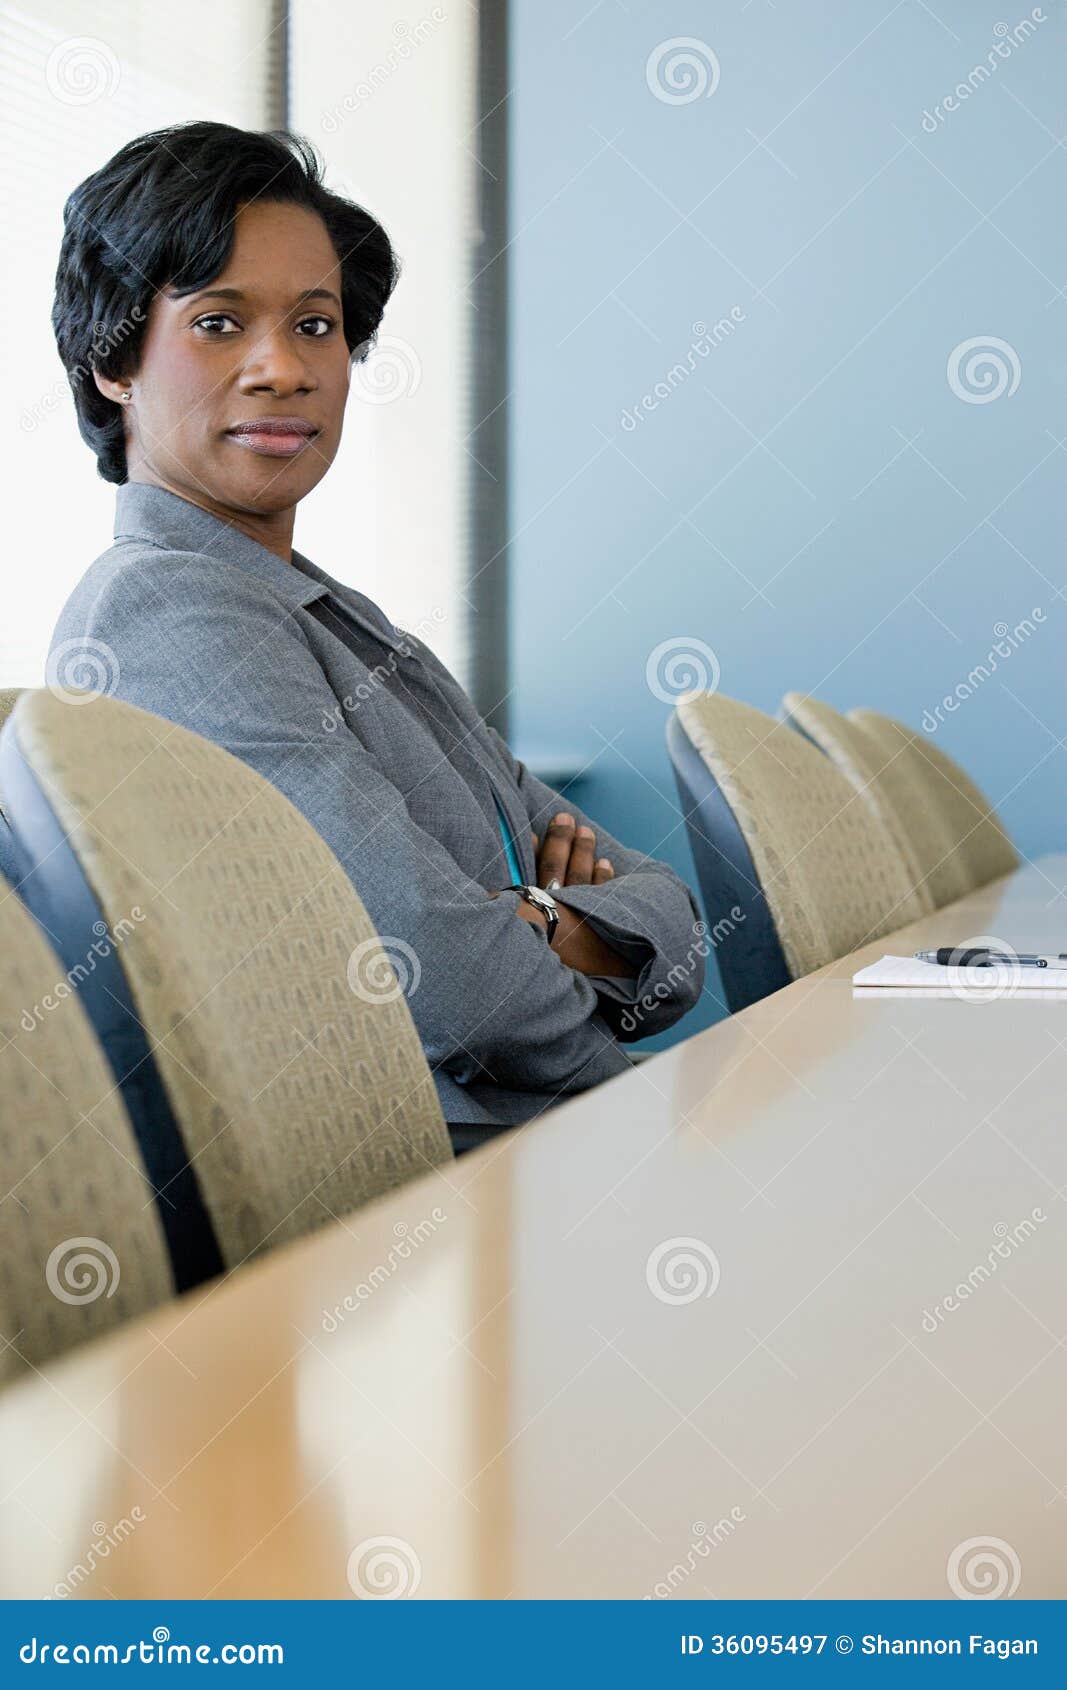 businesswoman in boardroom